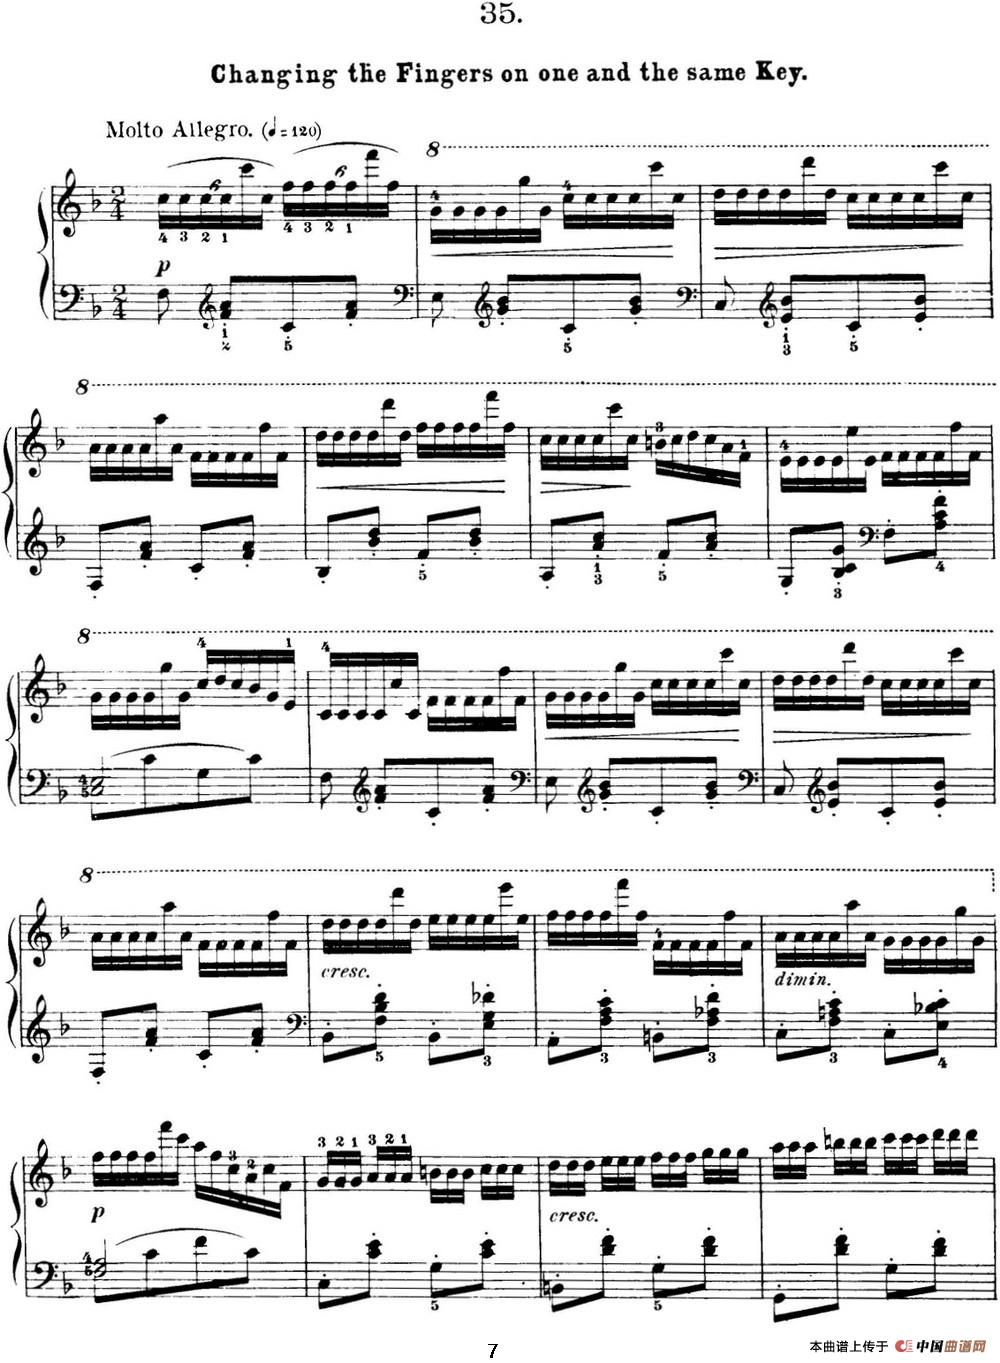 50首车尔尼Op.740钢琴手指灵巧技术练习曲（NO.35）(1)_C740_页面_126.jpg